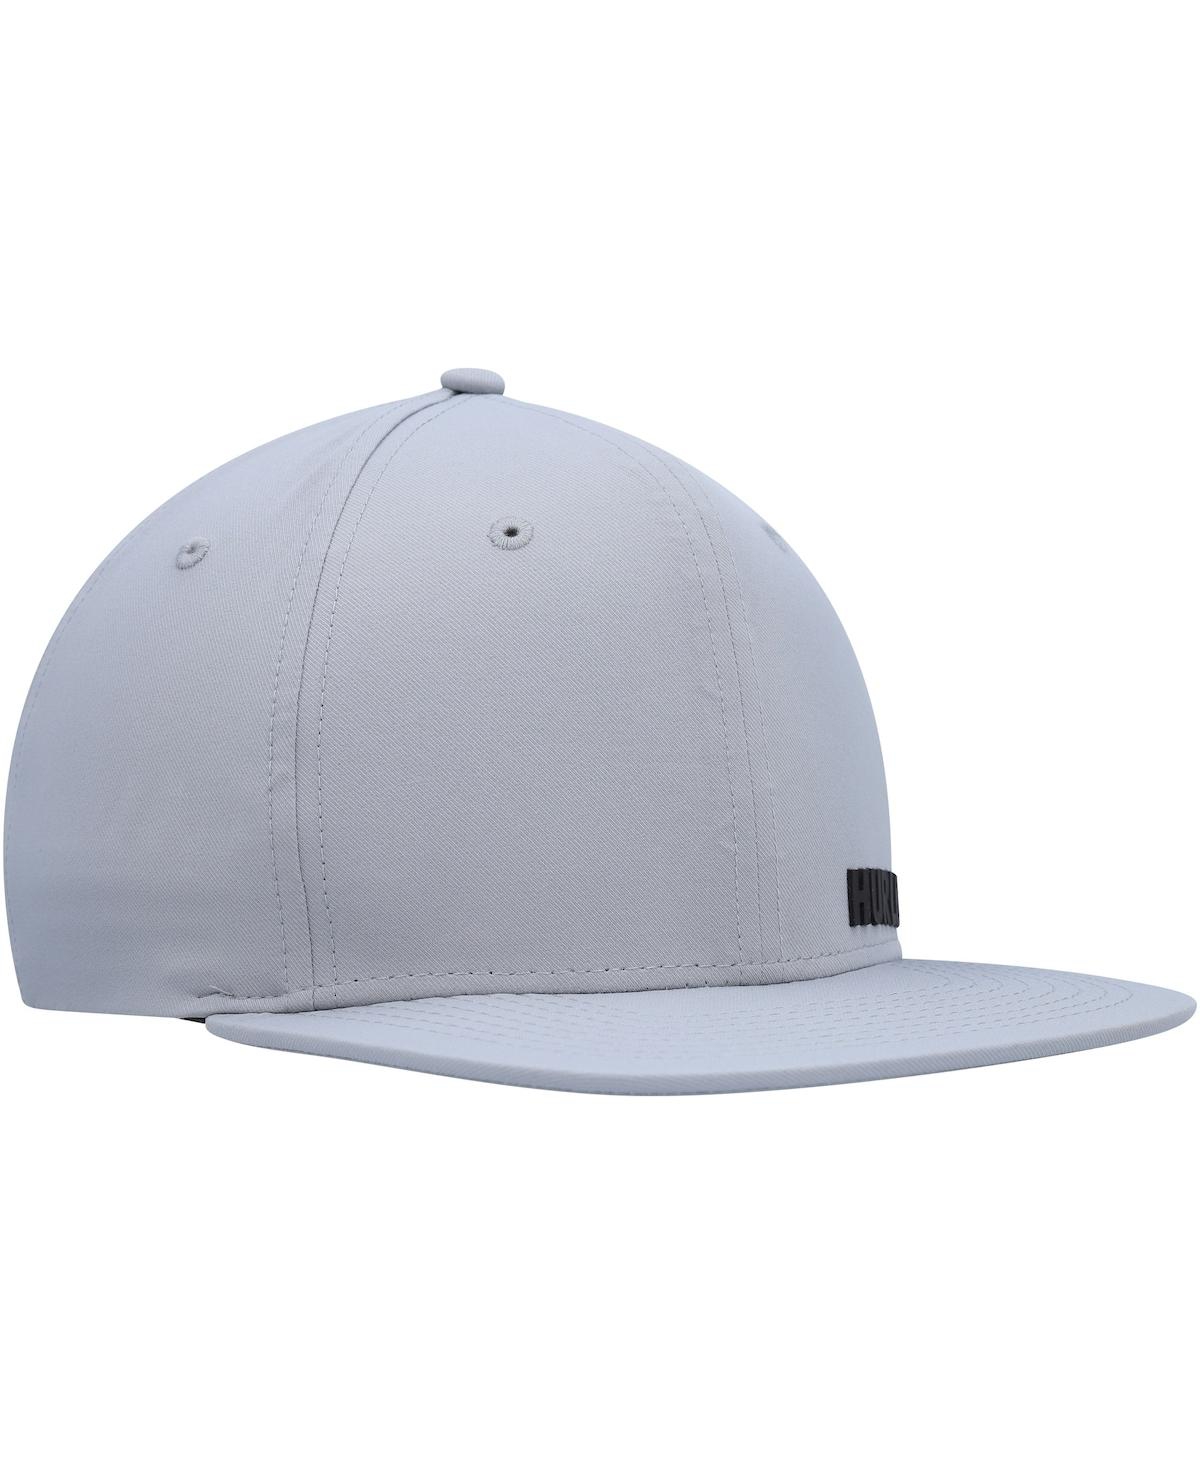 Shop Hurley Men's  Gray Phantom Ridge Zipperback Adjustable Hat